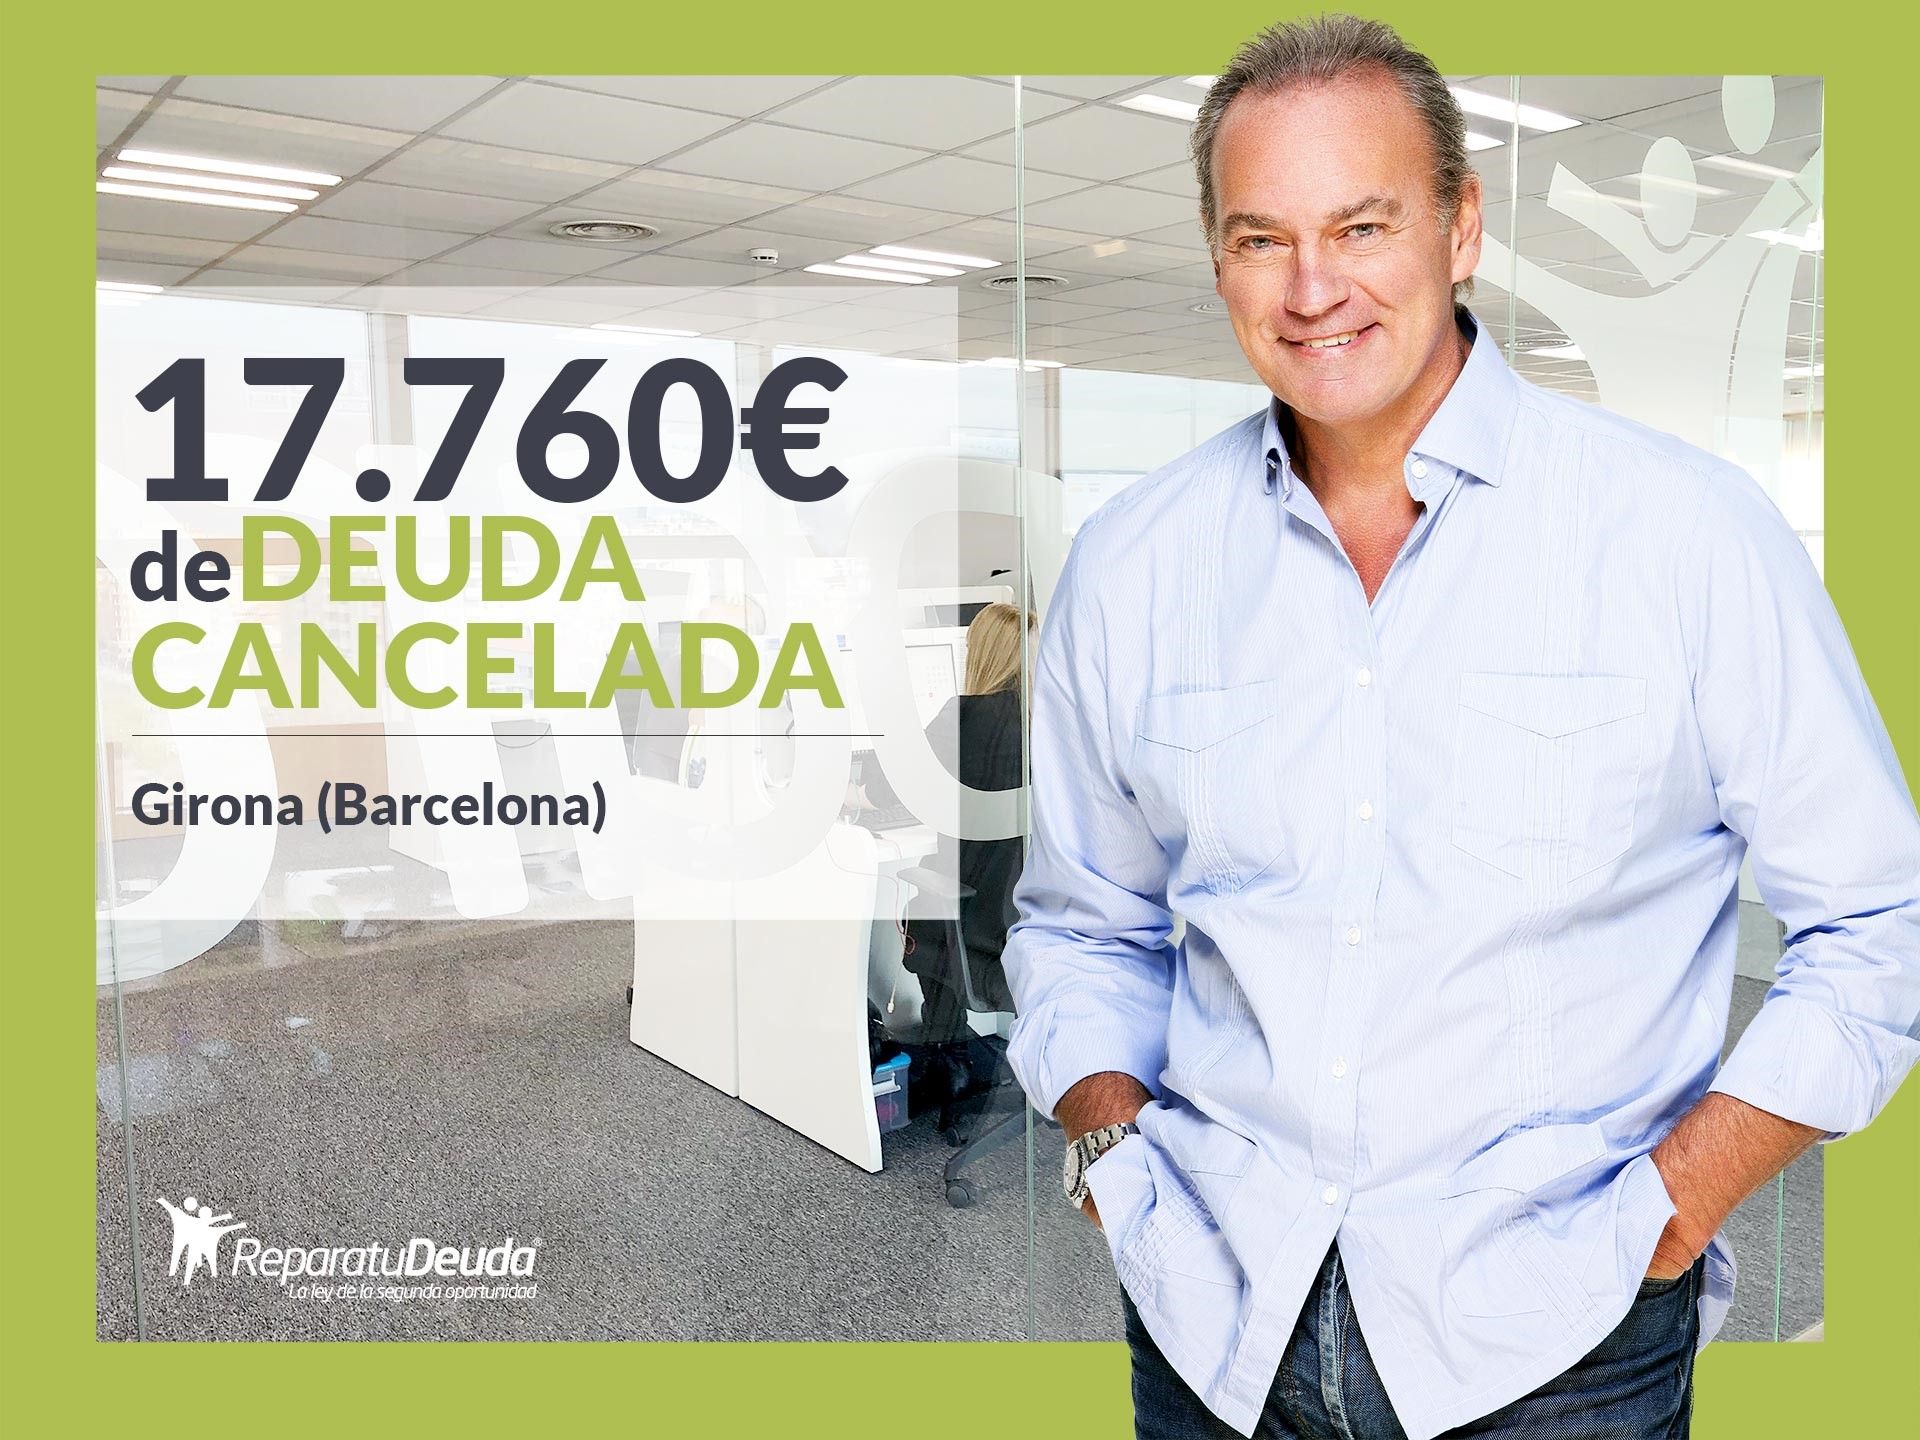 Repara tu Deuda Abogados cancela 17.760? en Girona (Catalunya) con la Ley de Segunda Oportunidad